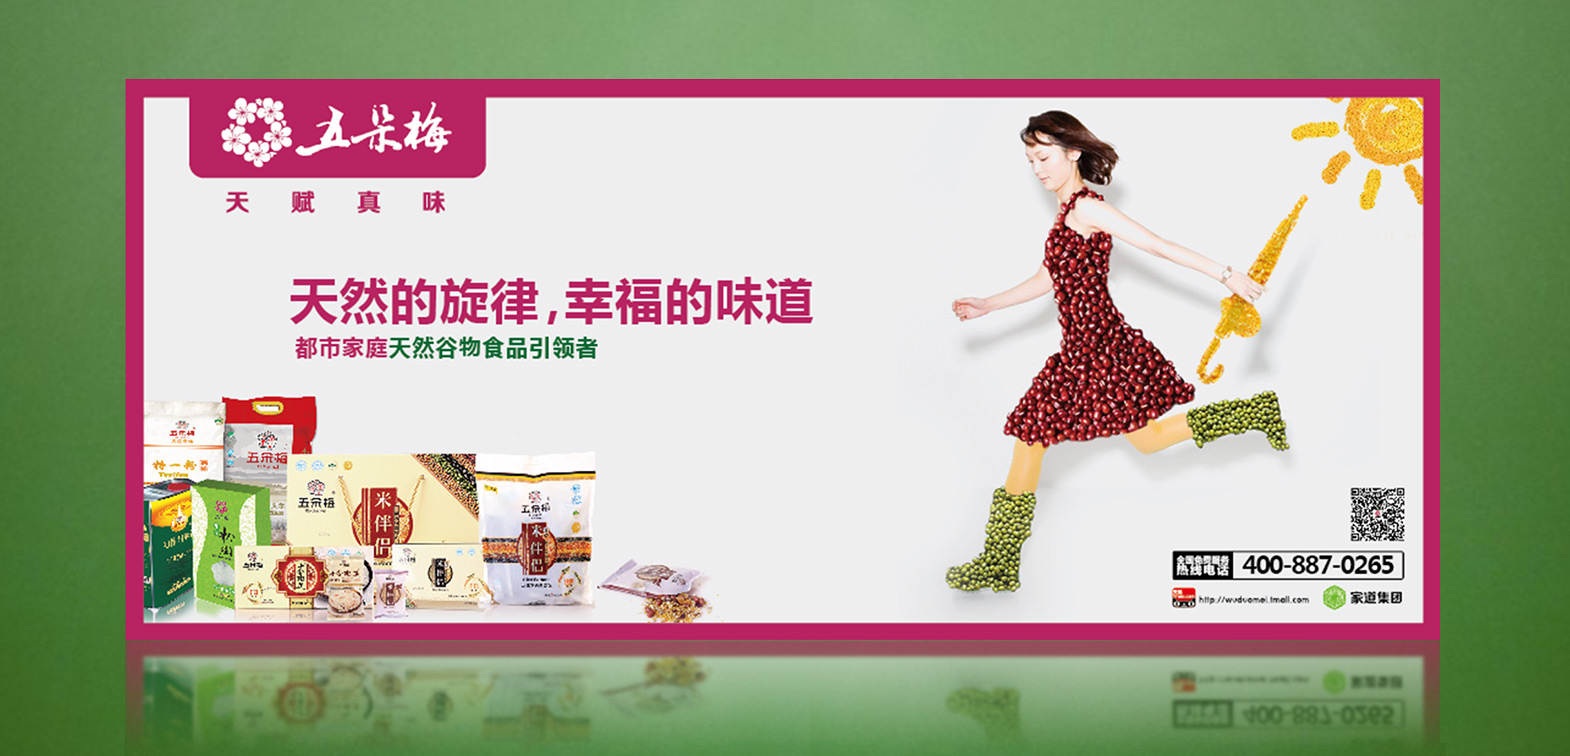 五朵梅食品公交广告火狐体育娱乐